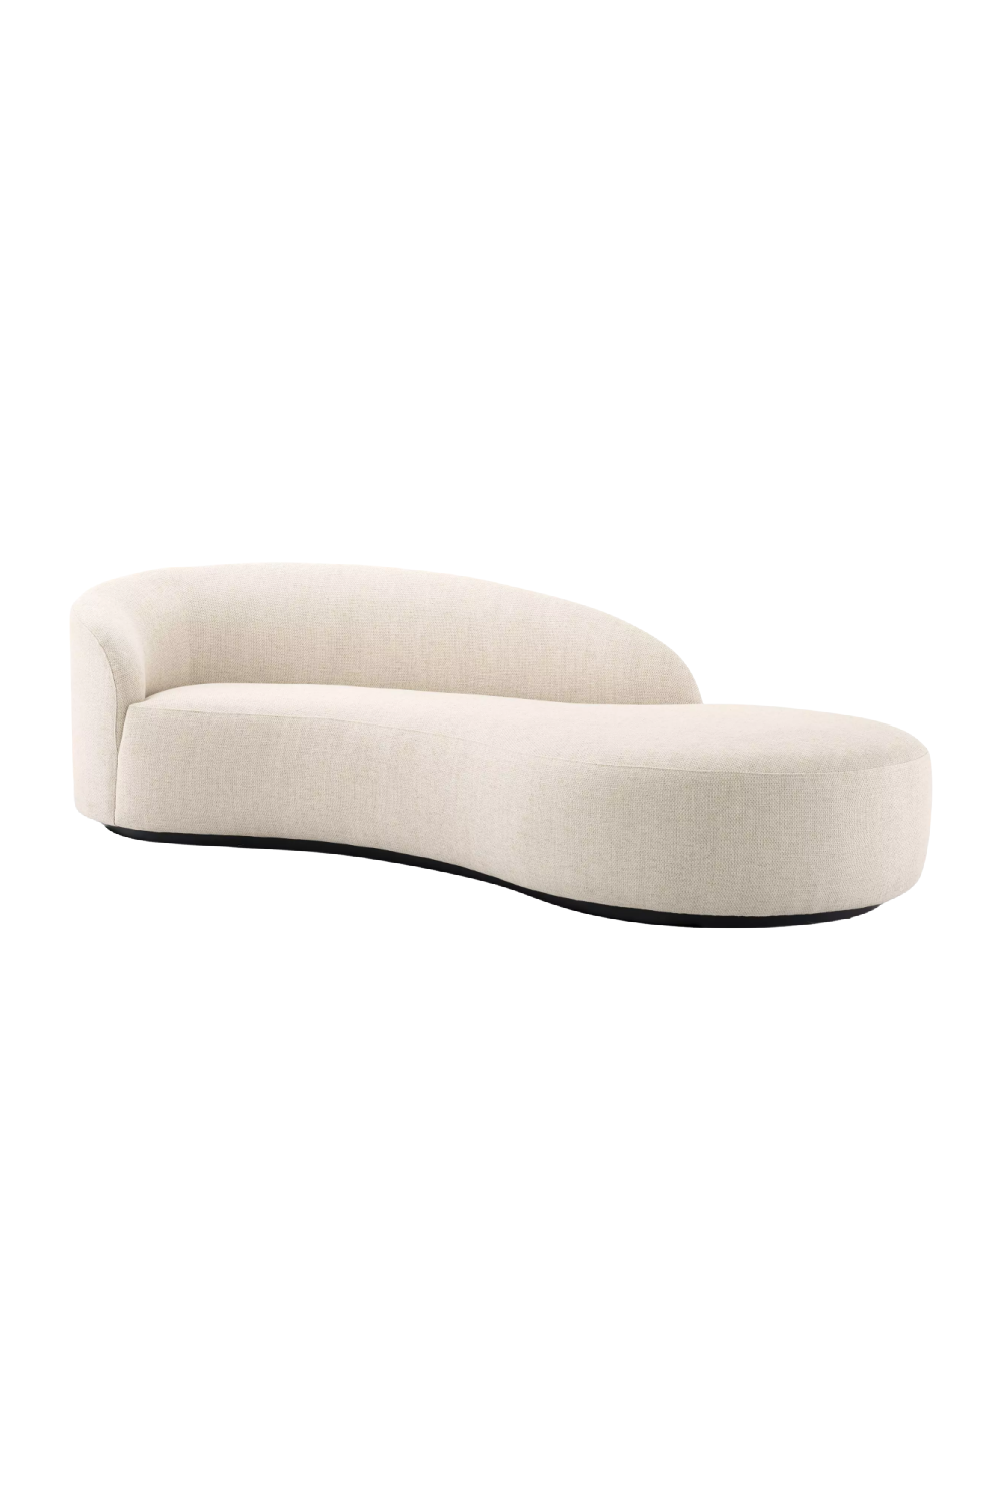 Modern Minimalist Curved Sofa | Eichholtz Bernd